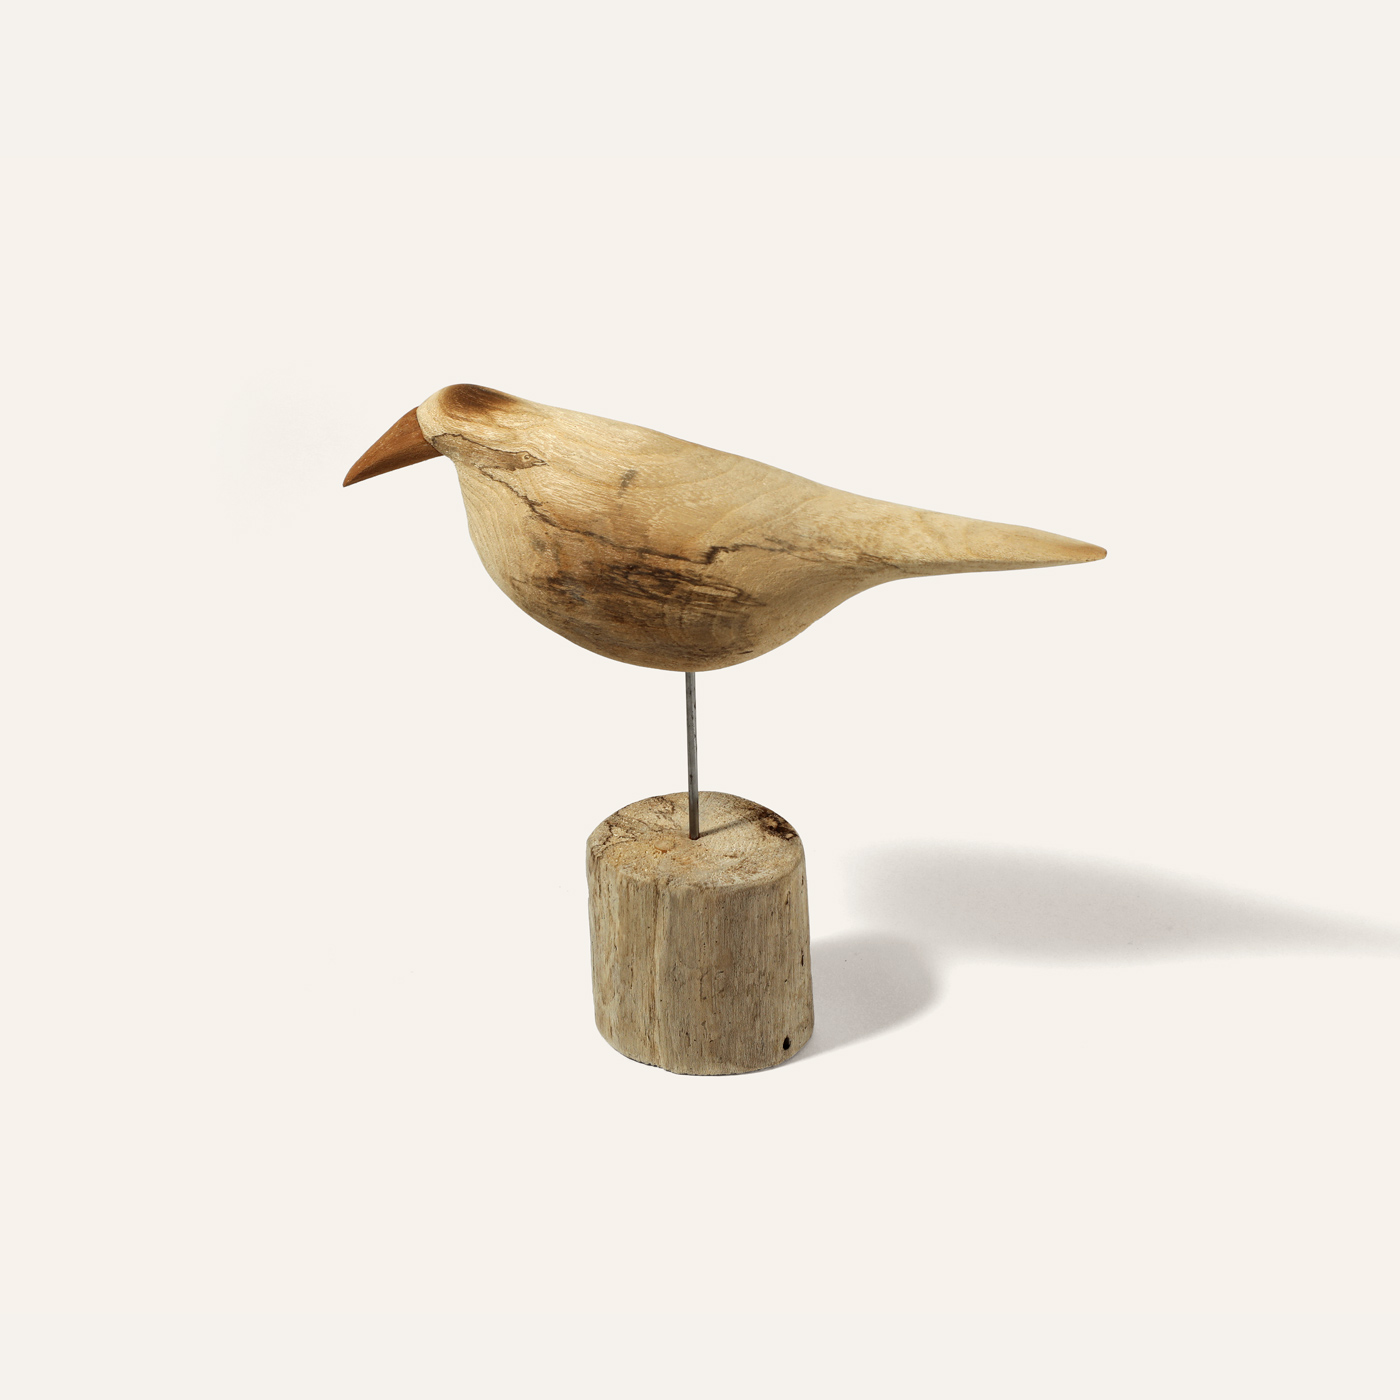 wooden bird object